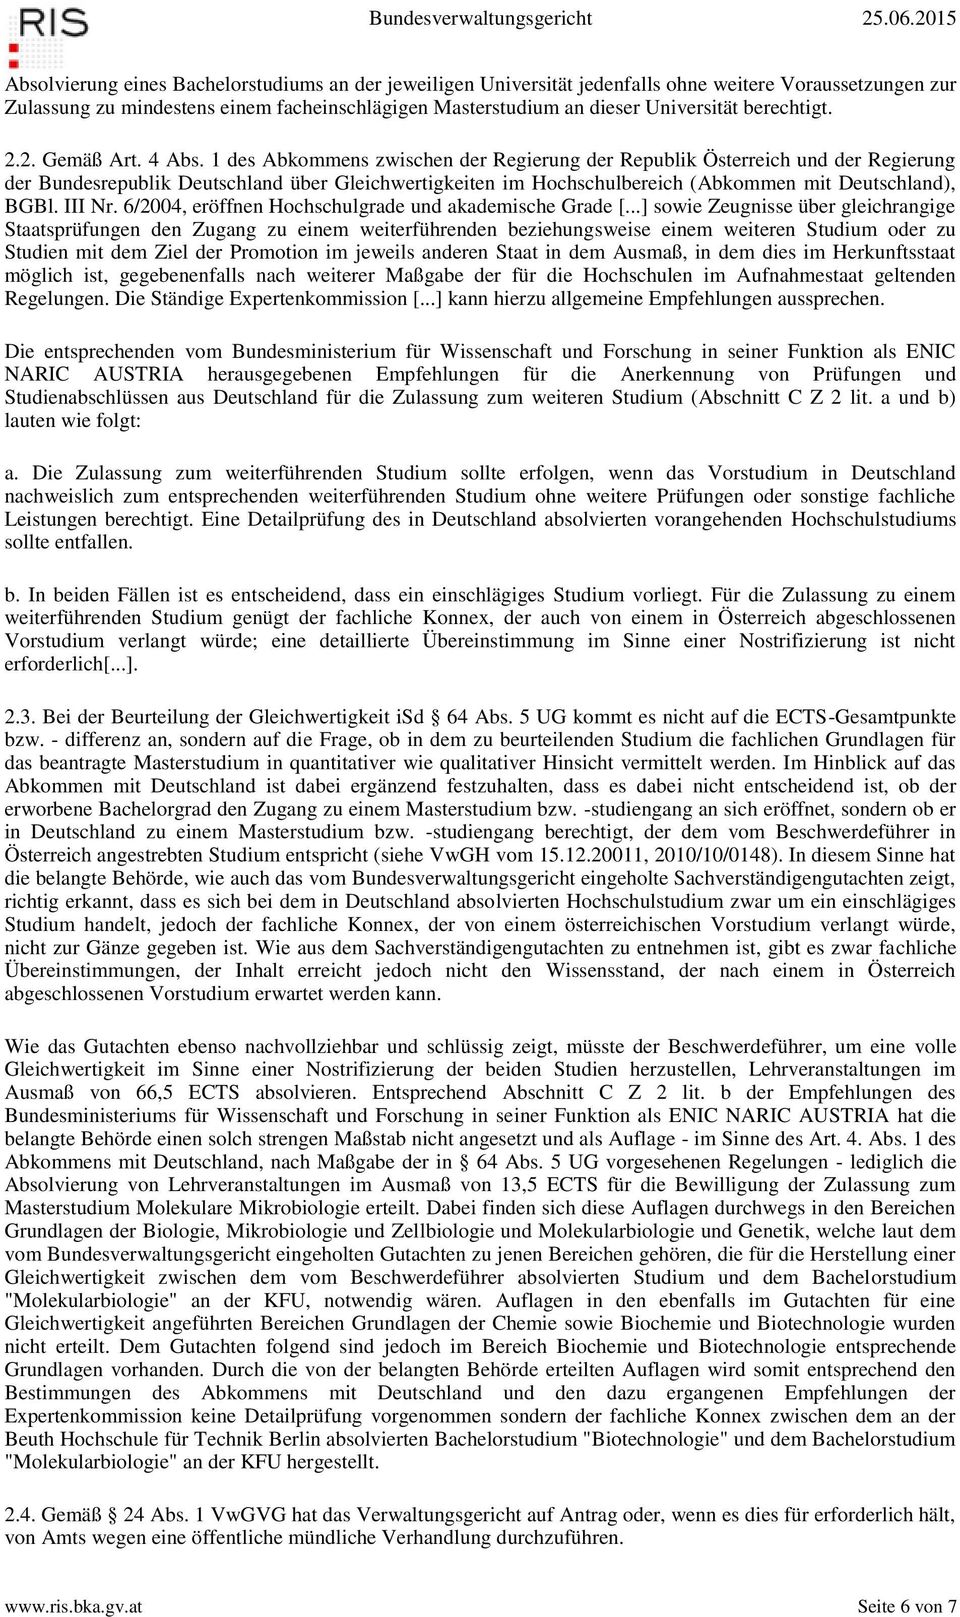 1 des Abkommens zwischen der Regierung der Republik Österreich und der Regierung der Bundesrepublik Deutschland über Gleichwertigkeiten im Hochschulbereich (Abkommen mit Deutschland), BGBl. III Nr.